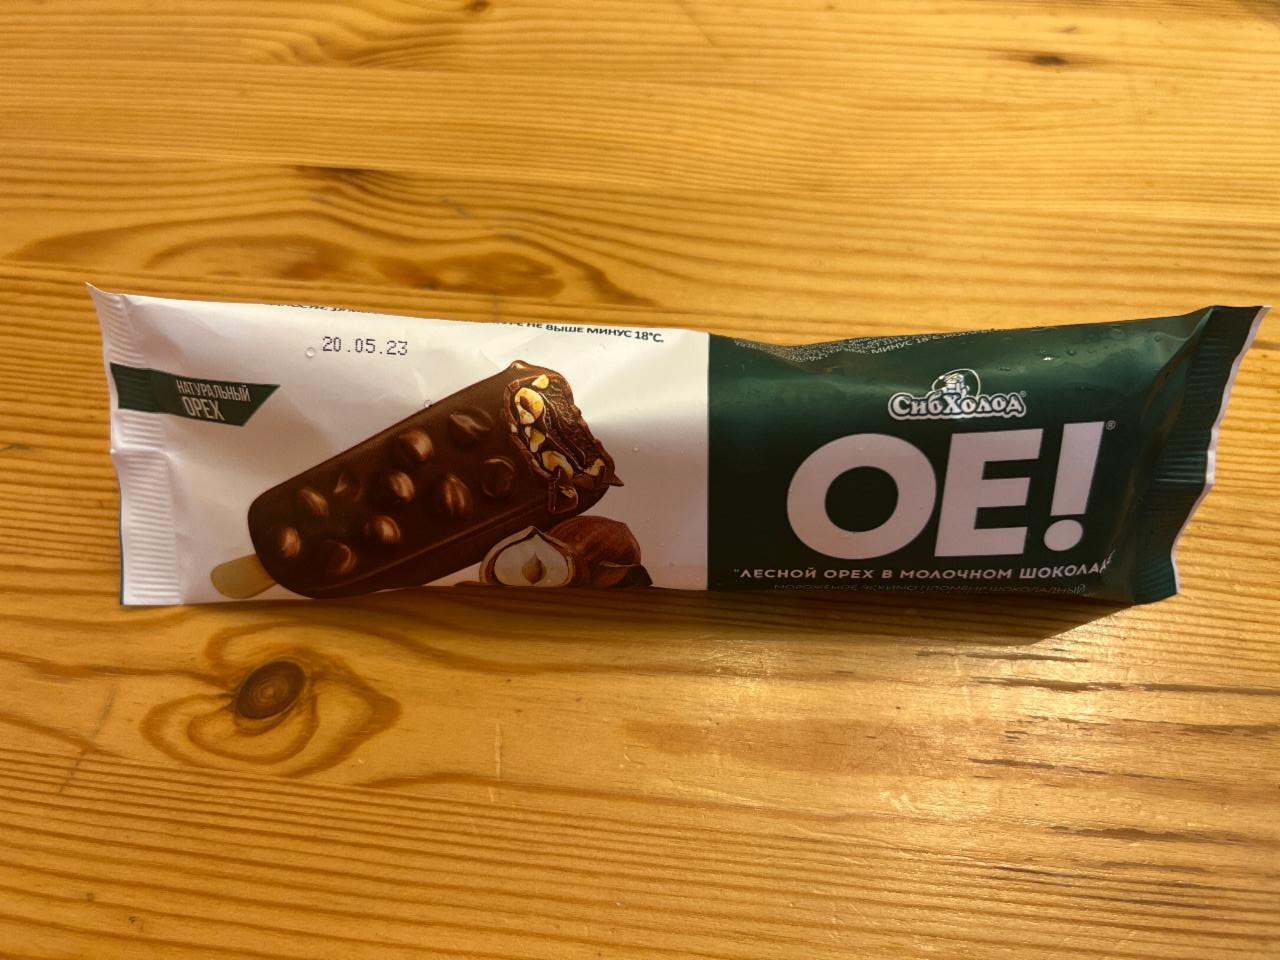 Фото - эскимо лесной орех в молочном шоколаде ОЕ! Сибхолод